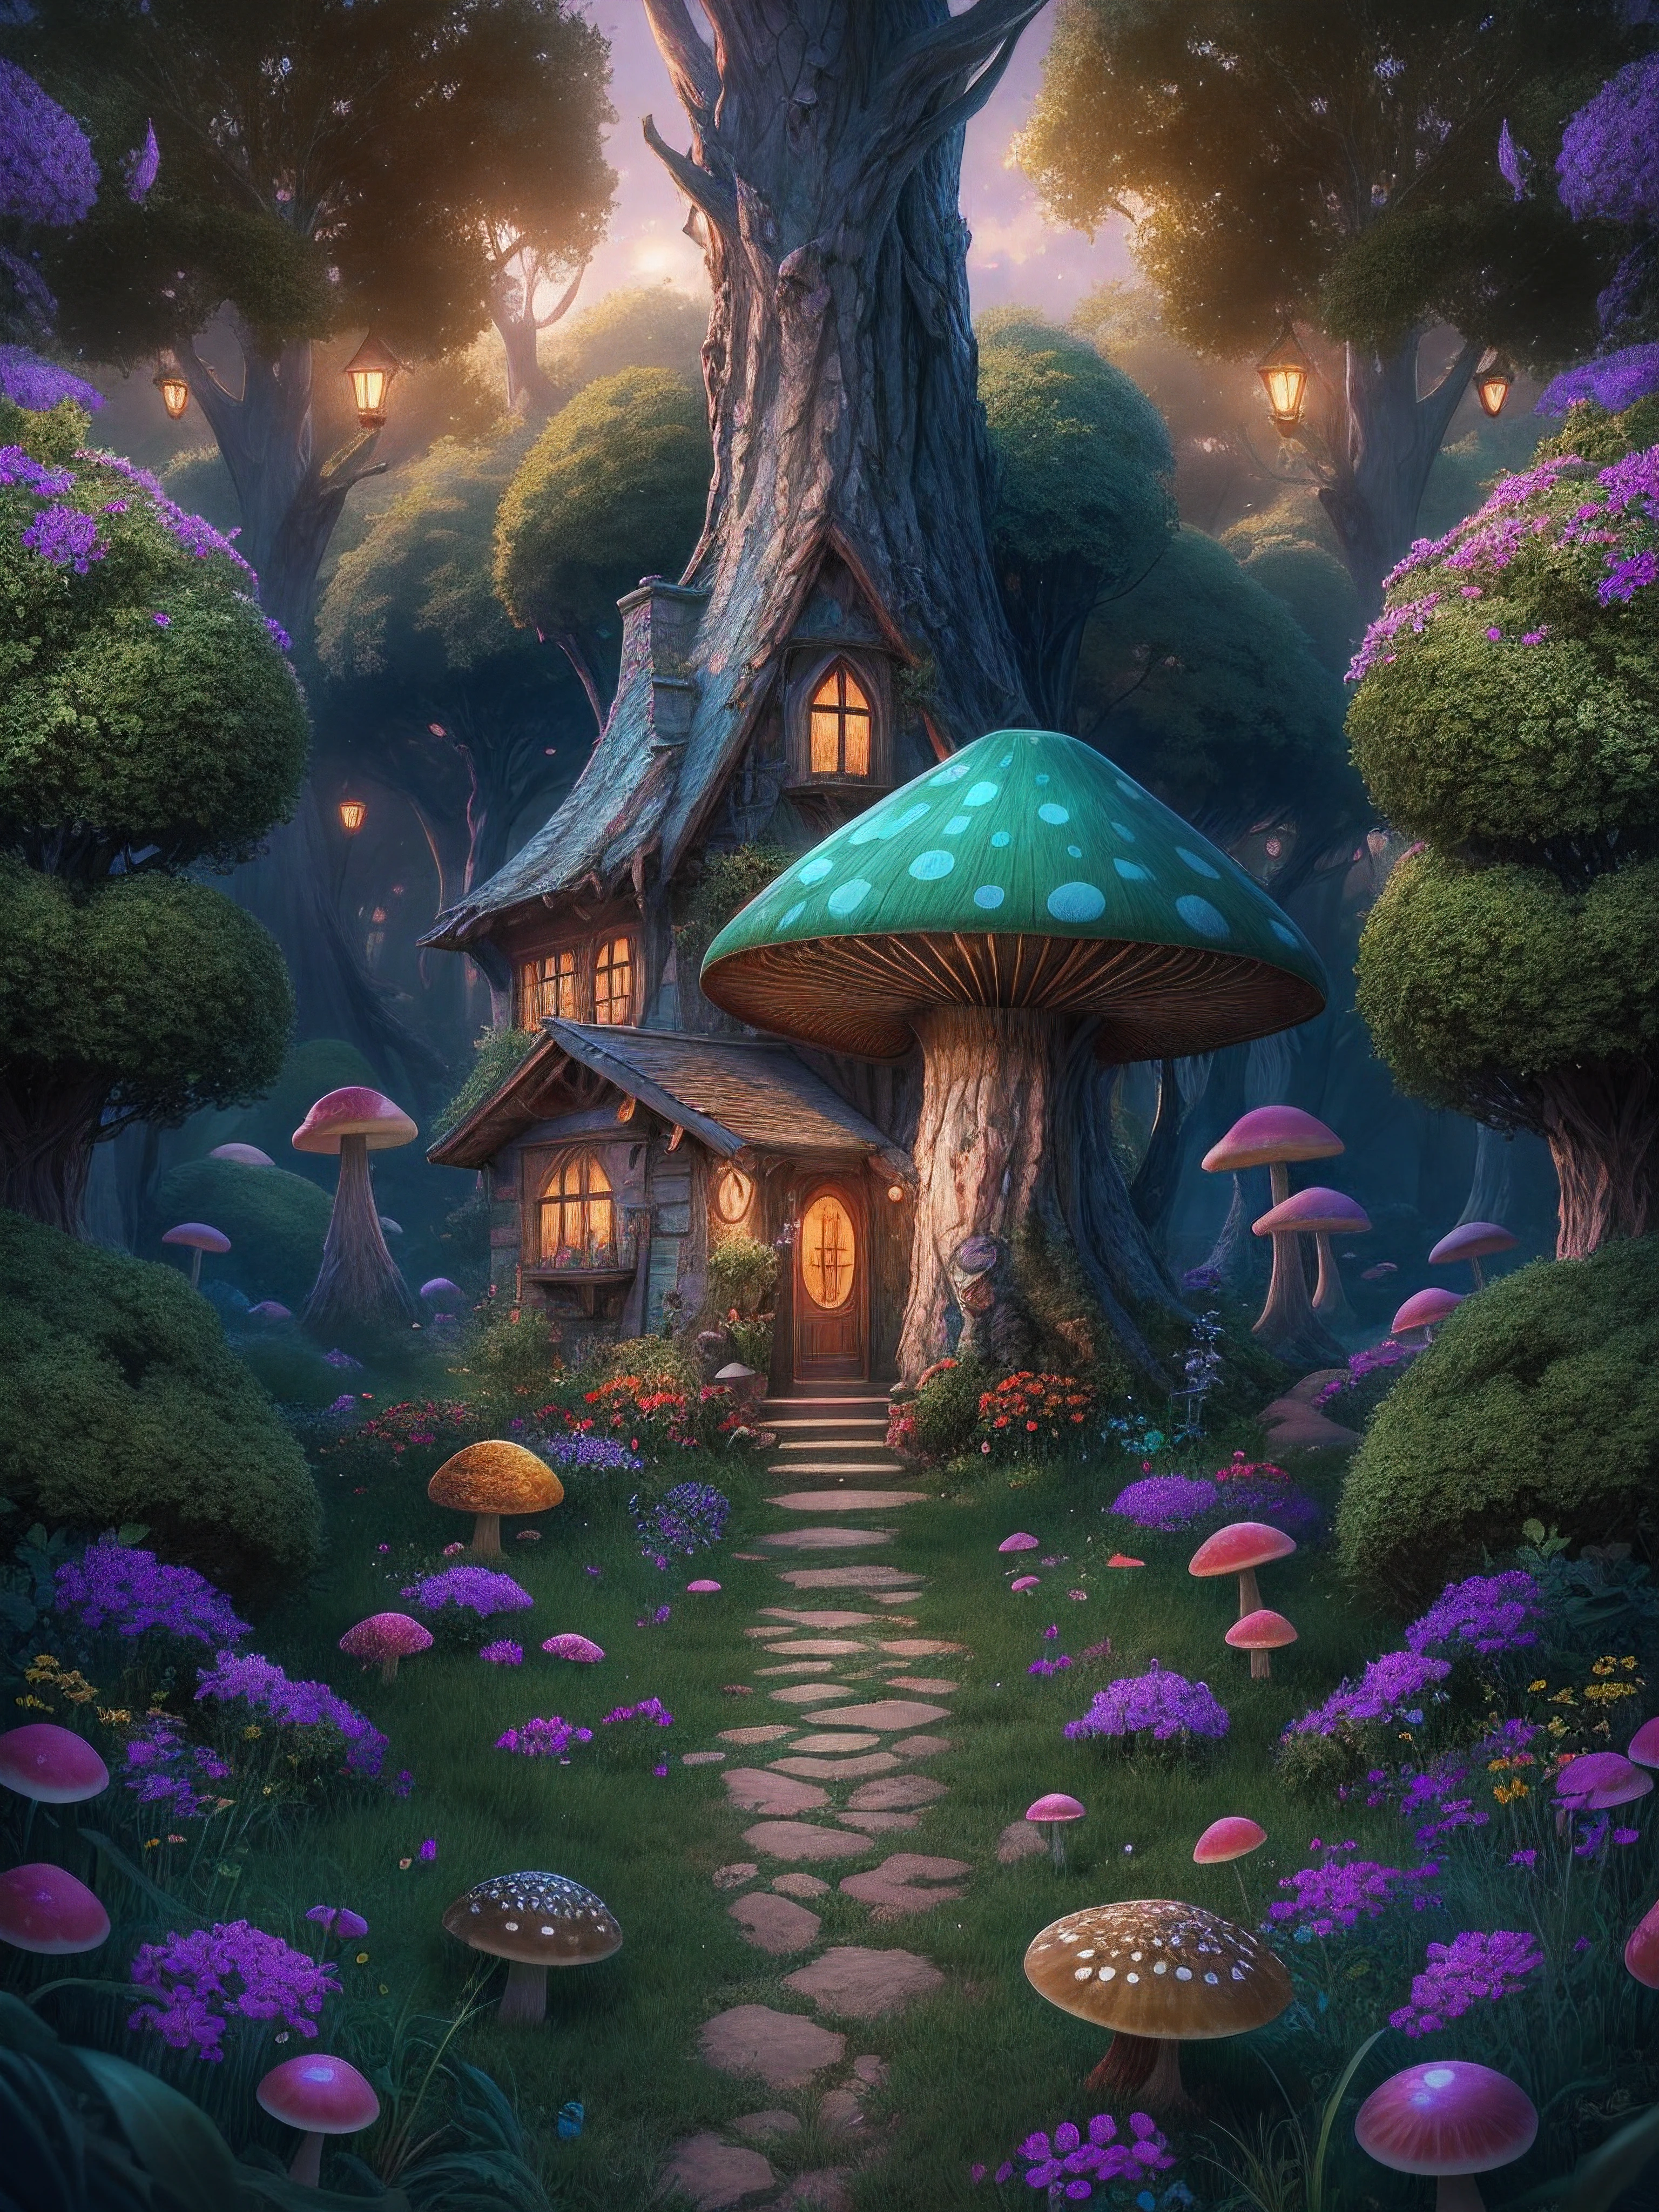 魔法森林的插图, 有高大的绿树, 中心有一个梦幻蘑菇，里面有色彩斑斓的小房子, 魔法, 居中, 对称, 绘, 错综复杂, 体积照明, 美丽的, 色彩浓烈浓郁的杰作, 清晰聚焦, 极其详细, 天文摄影. 构图非常细致, 8千, 完美构图., 超高清, 实际的, 鲜艳的颜色, 非常详细, 超高清绘图, 笔墨, 完美构图, 美丽的 detailed 错综复杂 insanely detailed octane render trending on artstation, 8k 艺术摄影, photo实际的 concept art, 柔和 自然 体积 电影 完美 光线